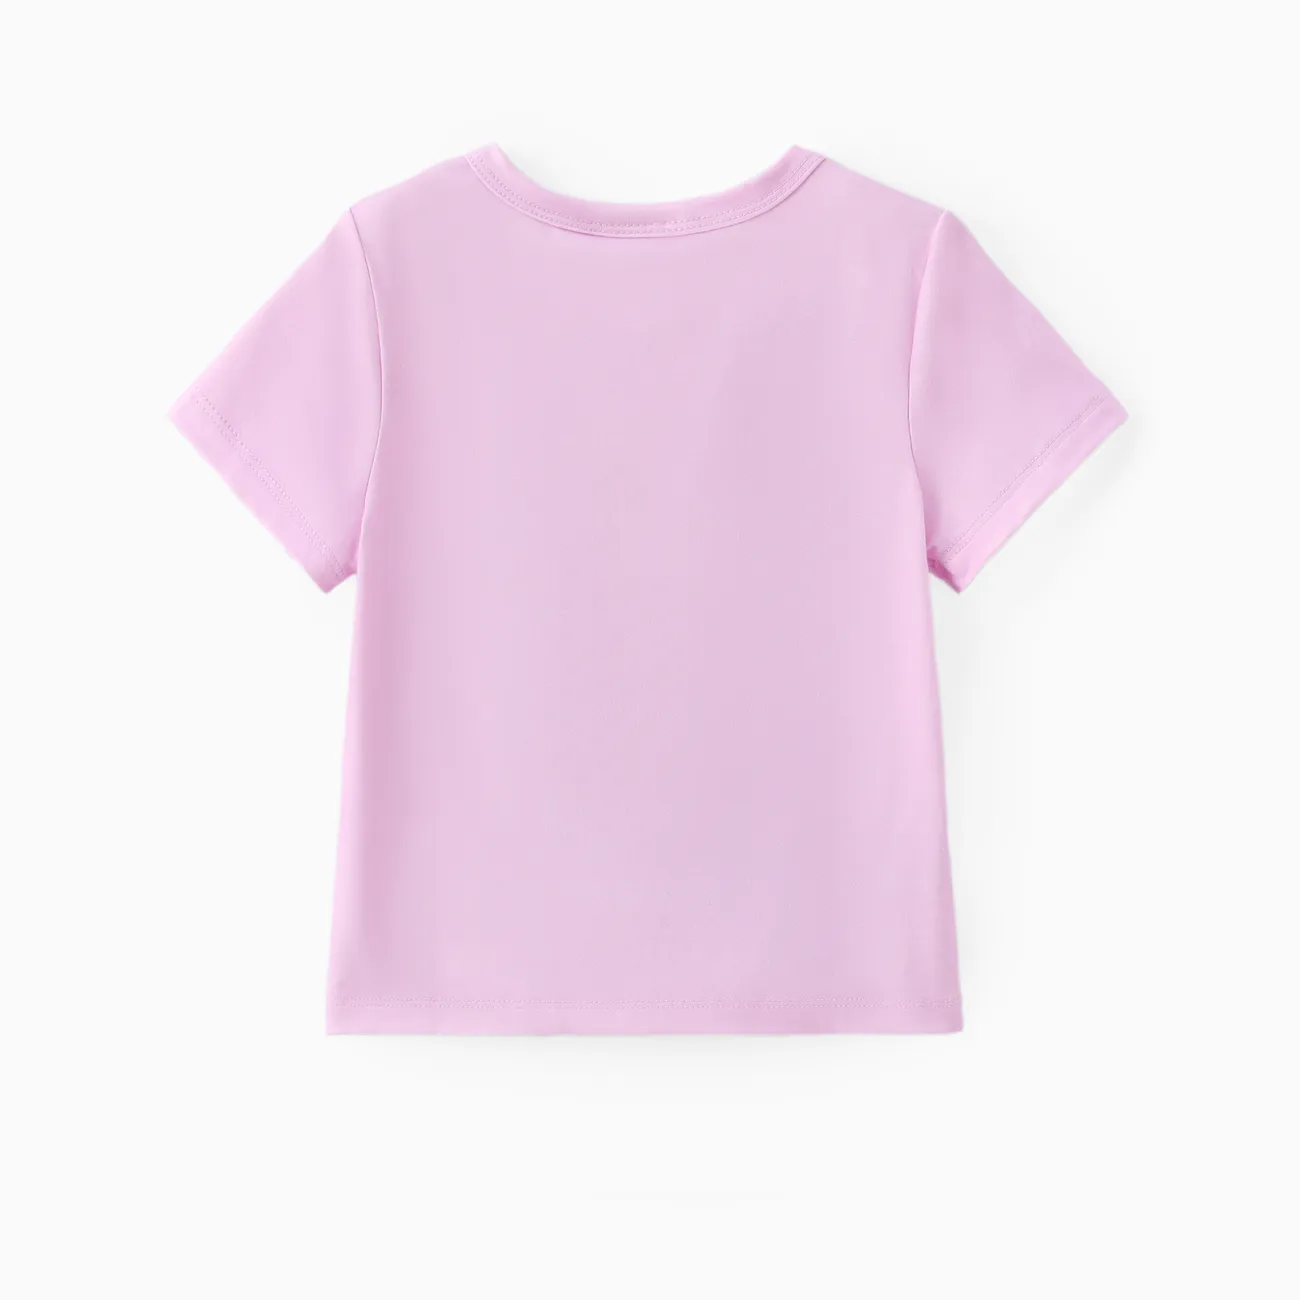 Helfer auf vier Pfoten Unisex Kindlich T-Shirts helles lila big image 1